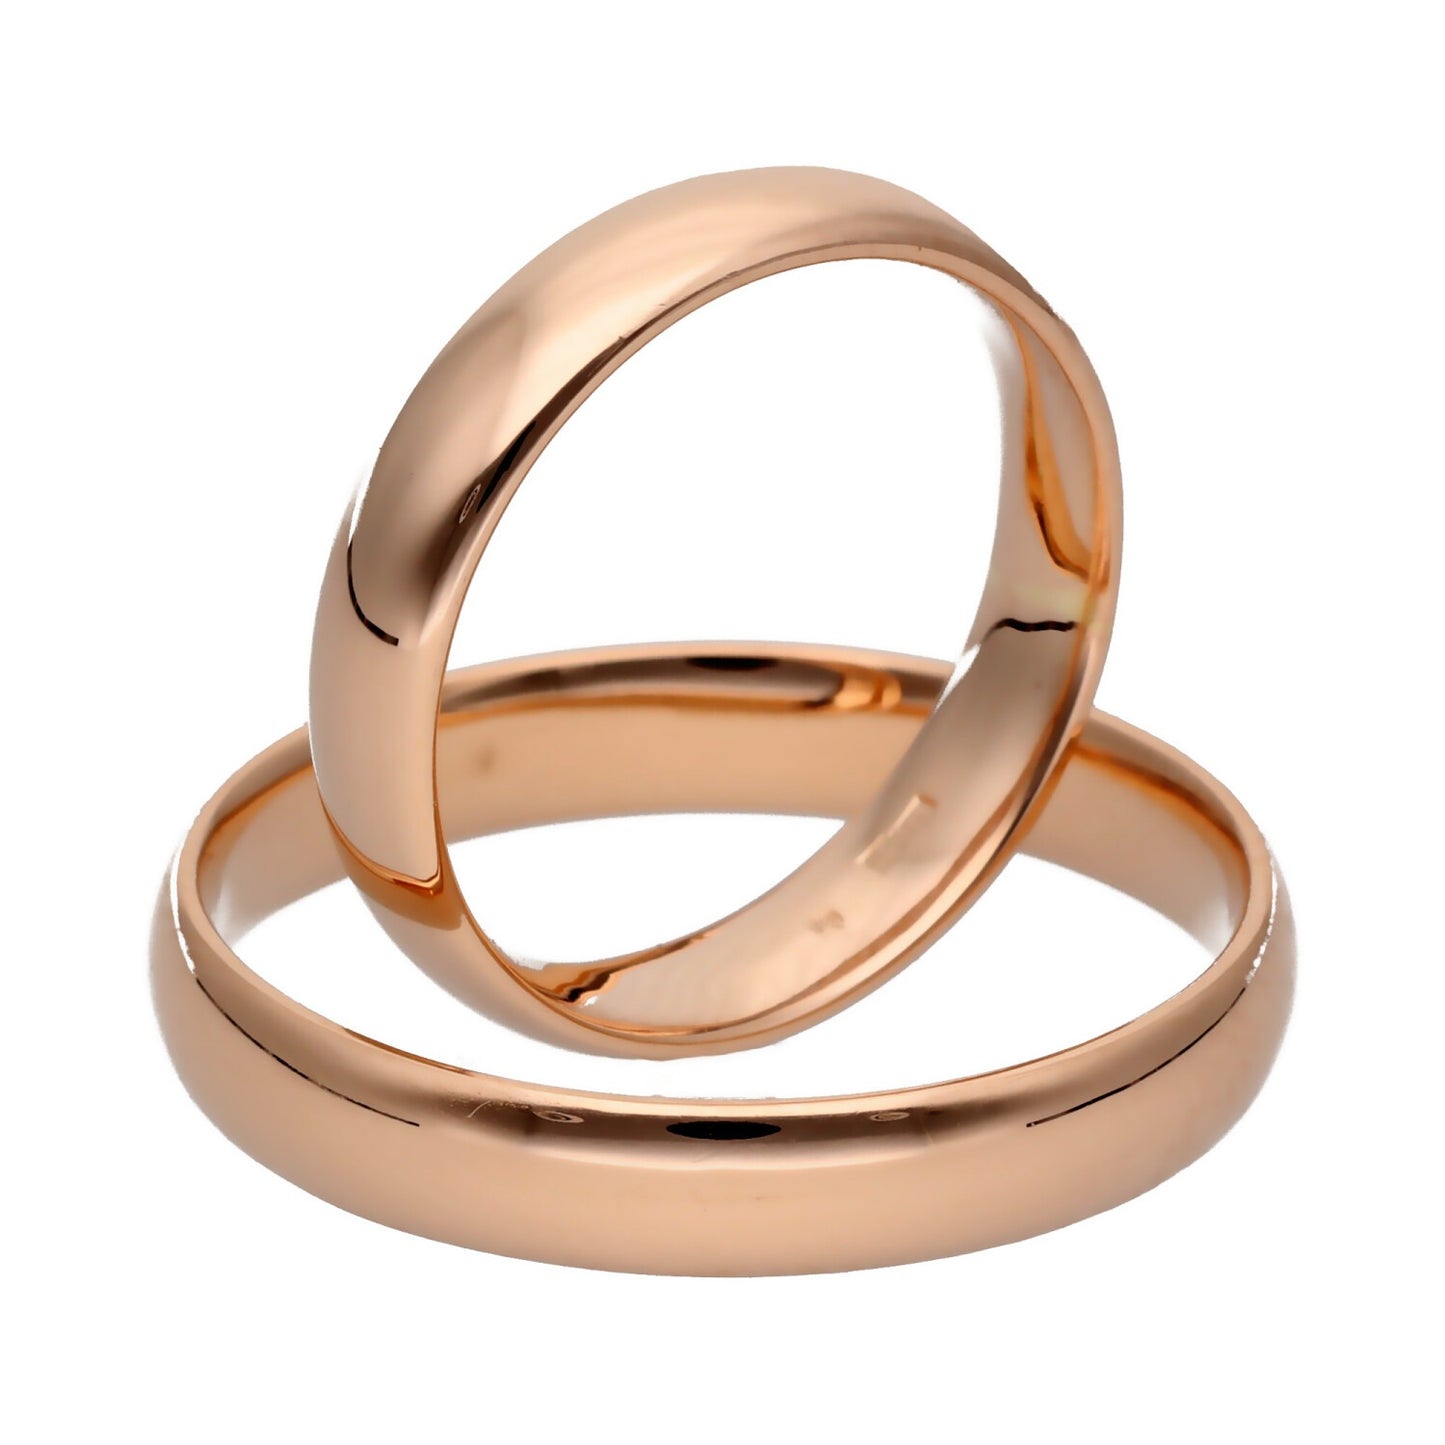 Klasikiniai vestuviniai žiedai 4mm pločio su komfortu vestuviniaiziedai.lt